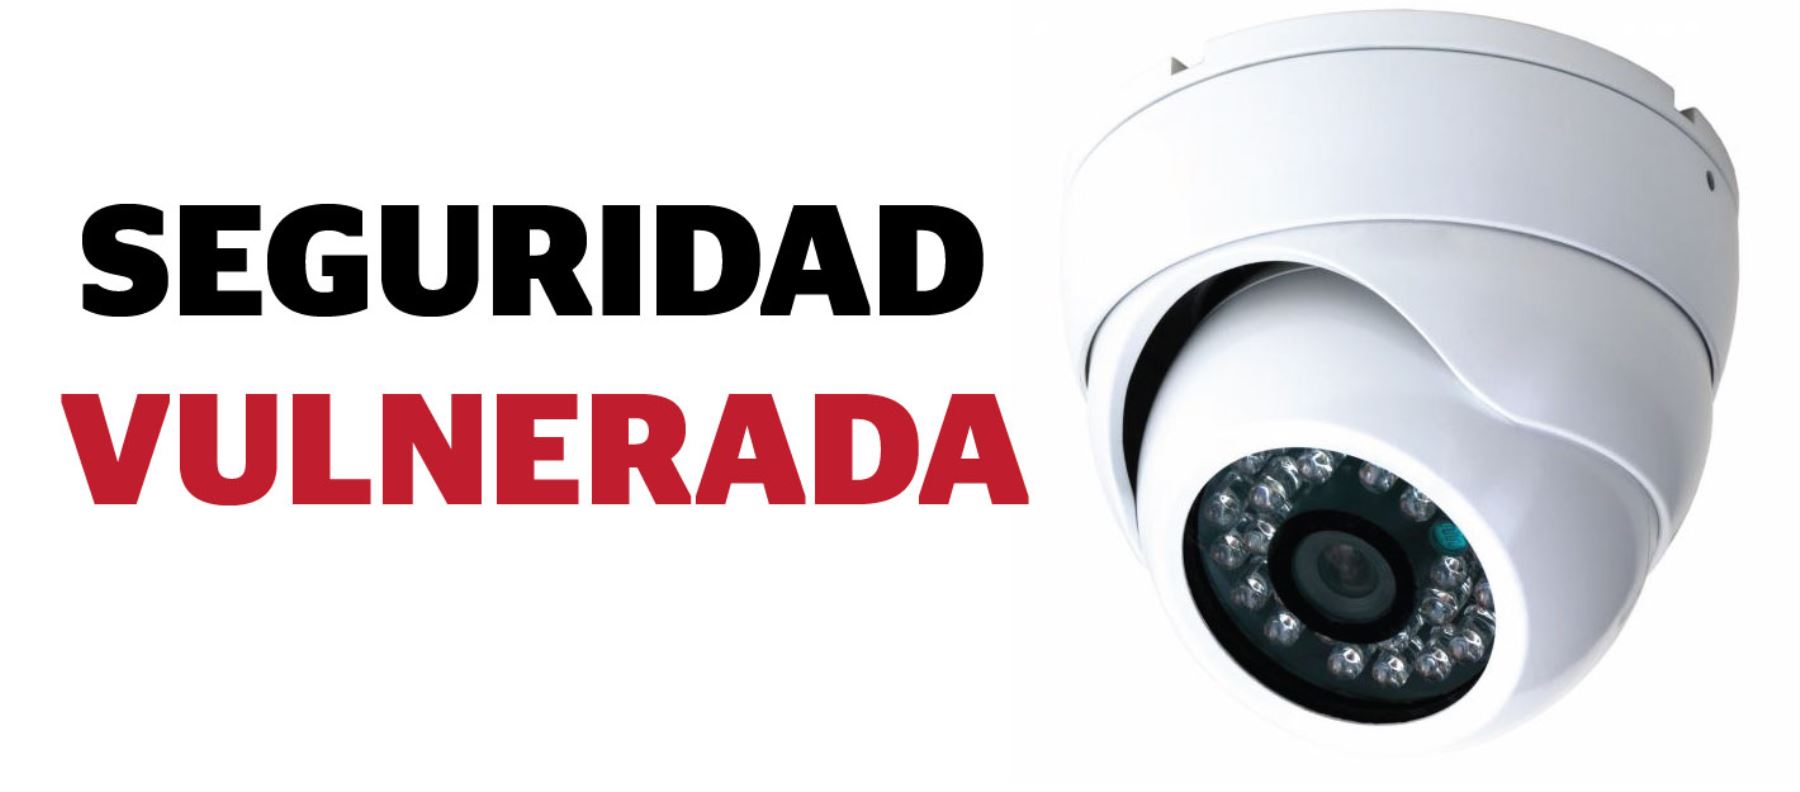 Advierten que vulneran acceso a cámaras seguridad | Noticias | Agencia Peruana de Noticias Andina